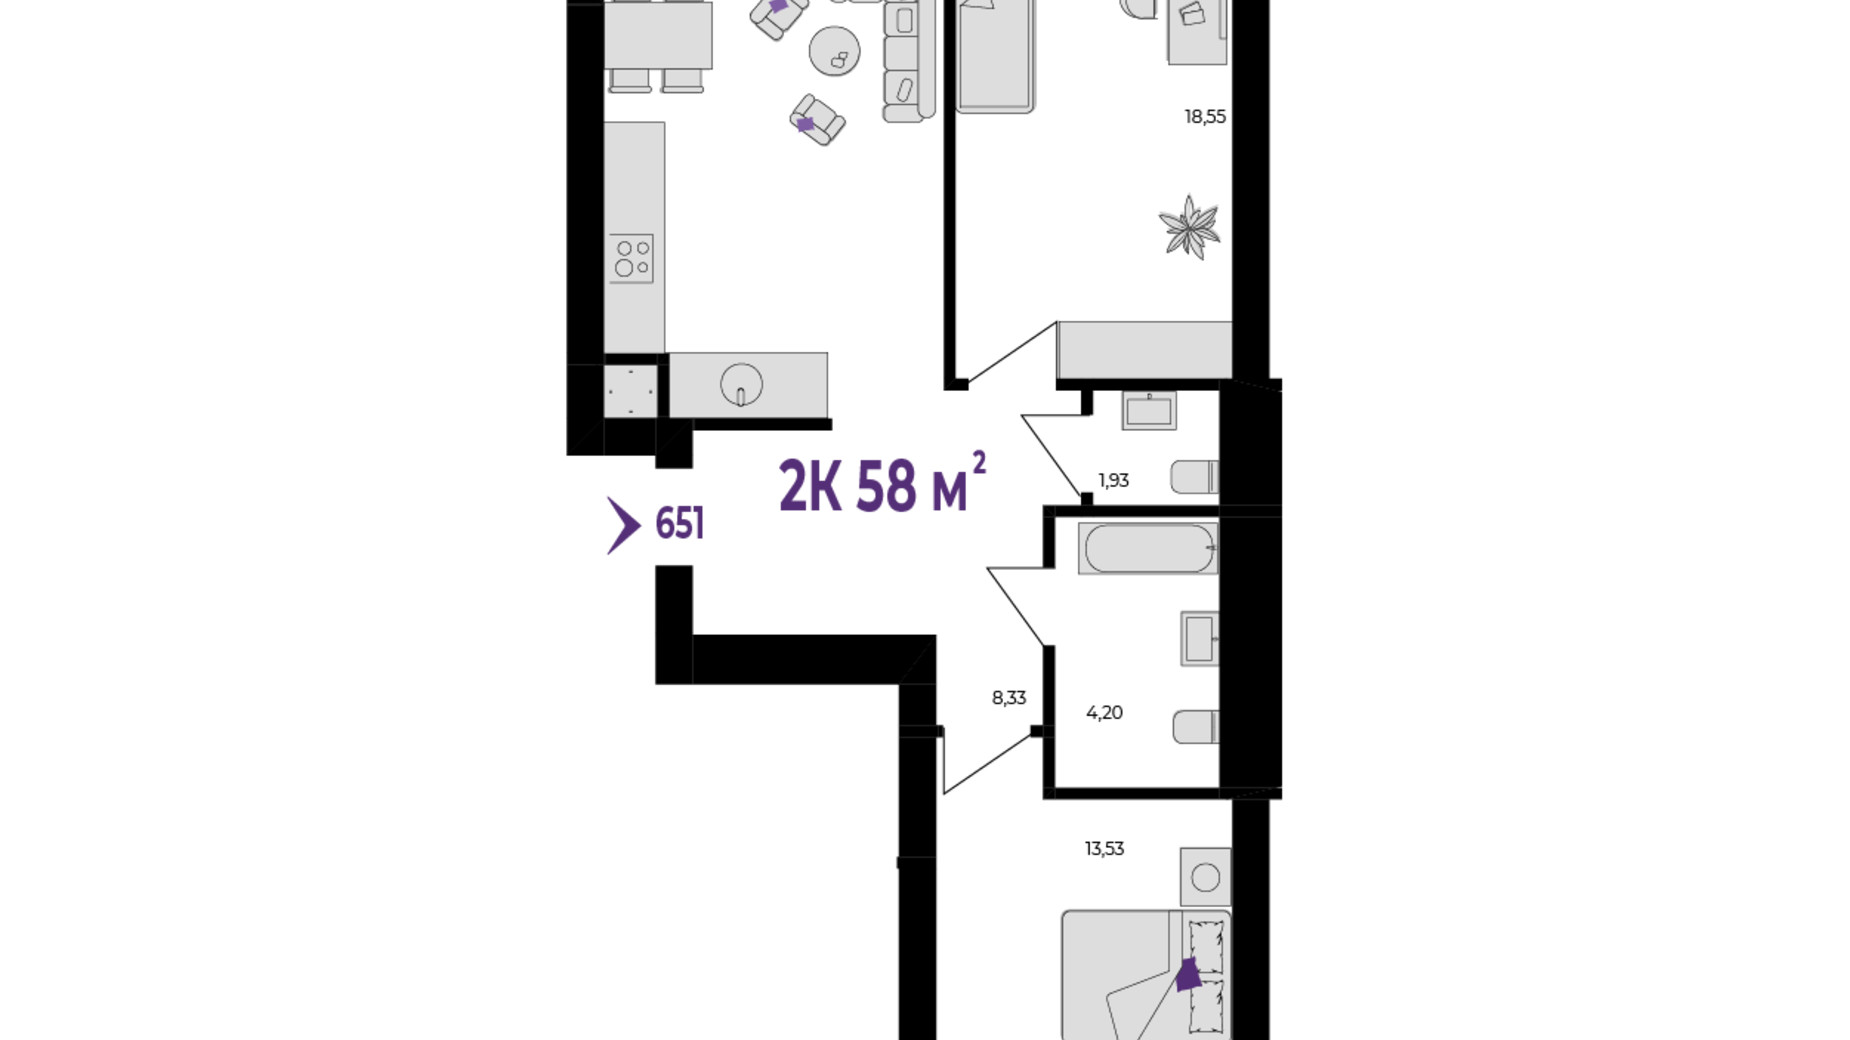 Планировка 2-комнатной квартиры в ЖК Wawel 58 м², фото 651525